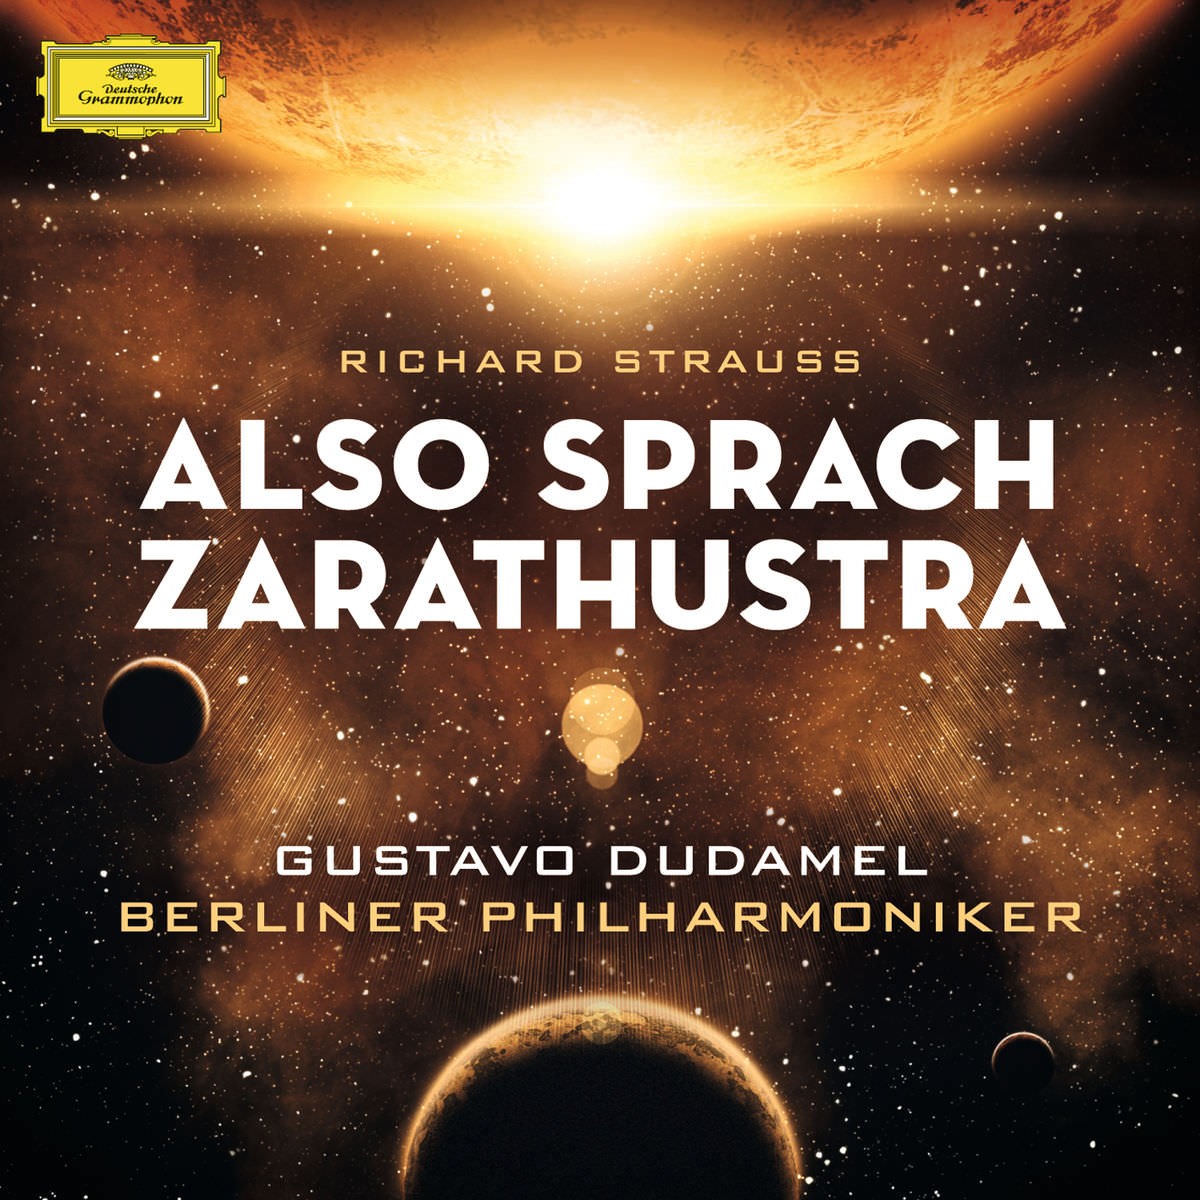 Berliner Philharmoniker & Gustavo Dudamel - Richard Strauss: Also sprach Zarathustra (2013/2014) [FLAC 24bit/96kHz]